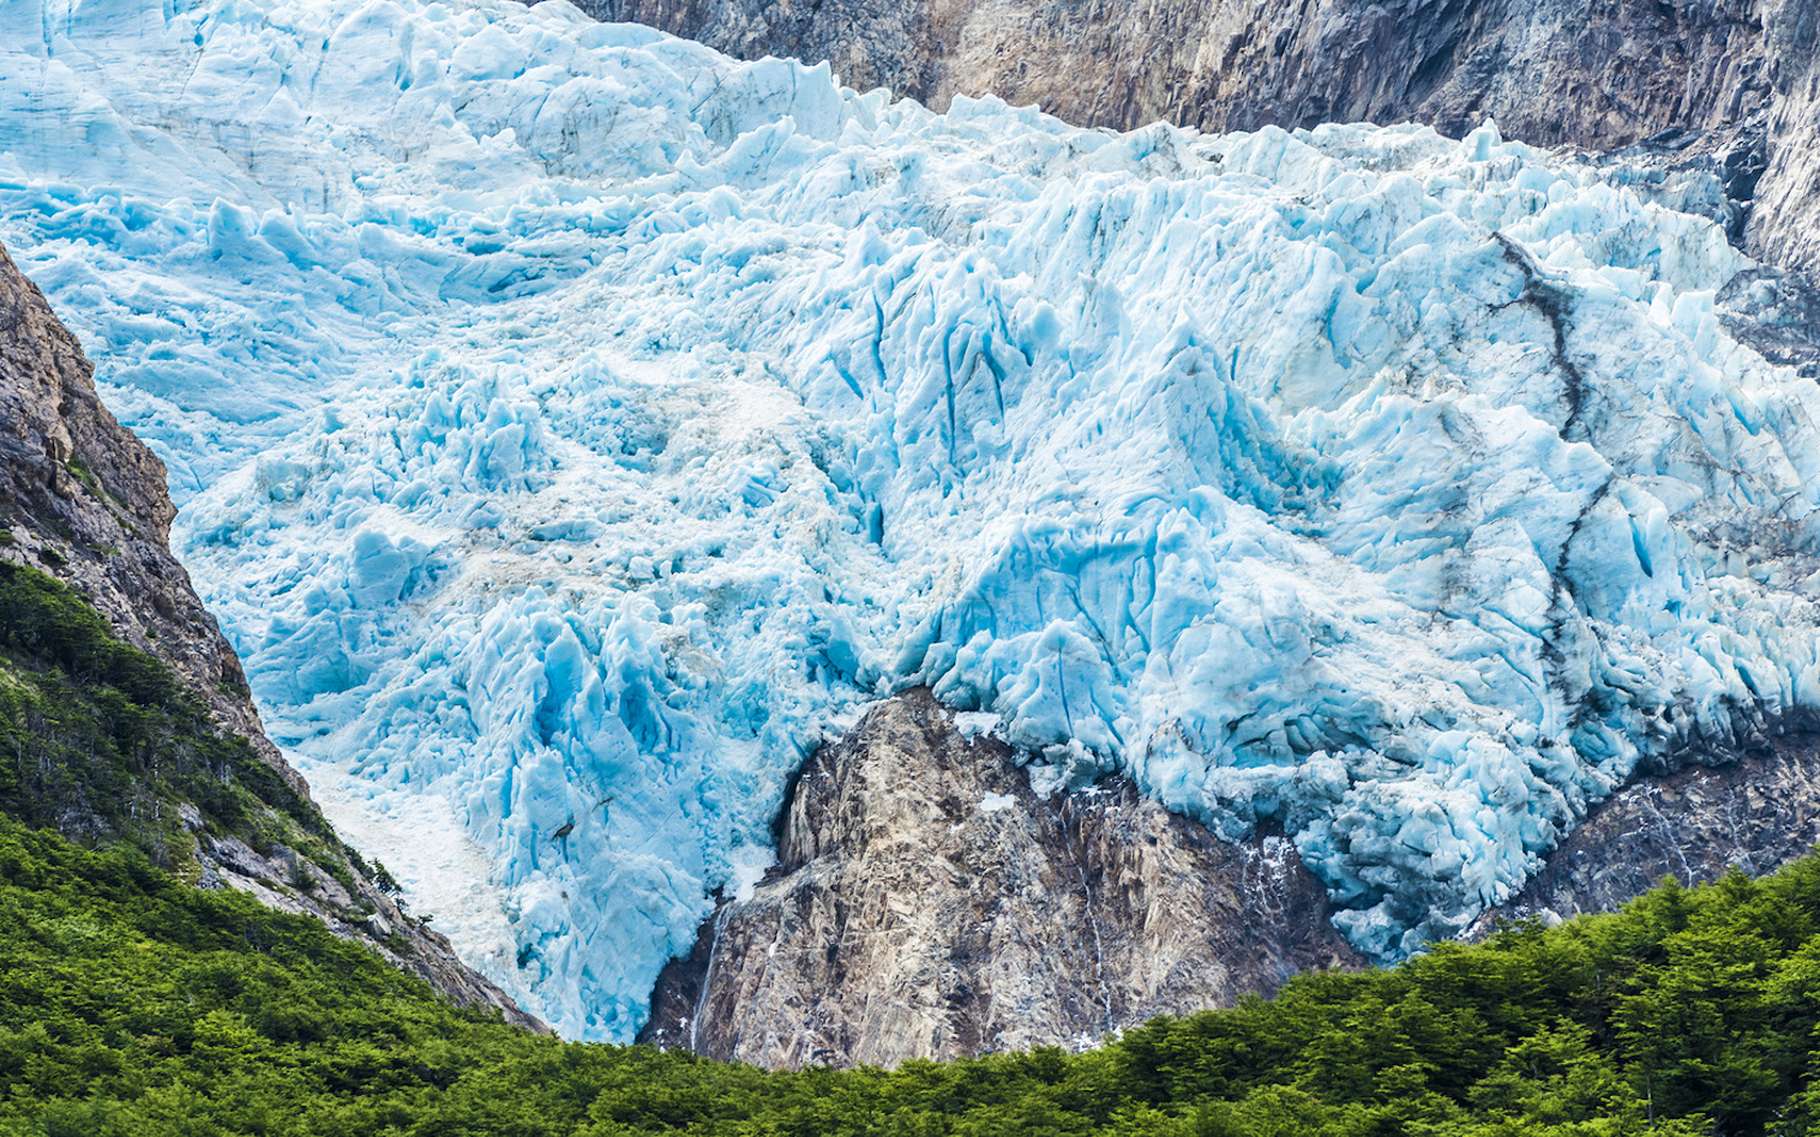 La moitié des glaciers classés au patrimoine mondial pourraient disparaître d’ici 2100